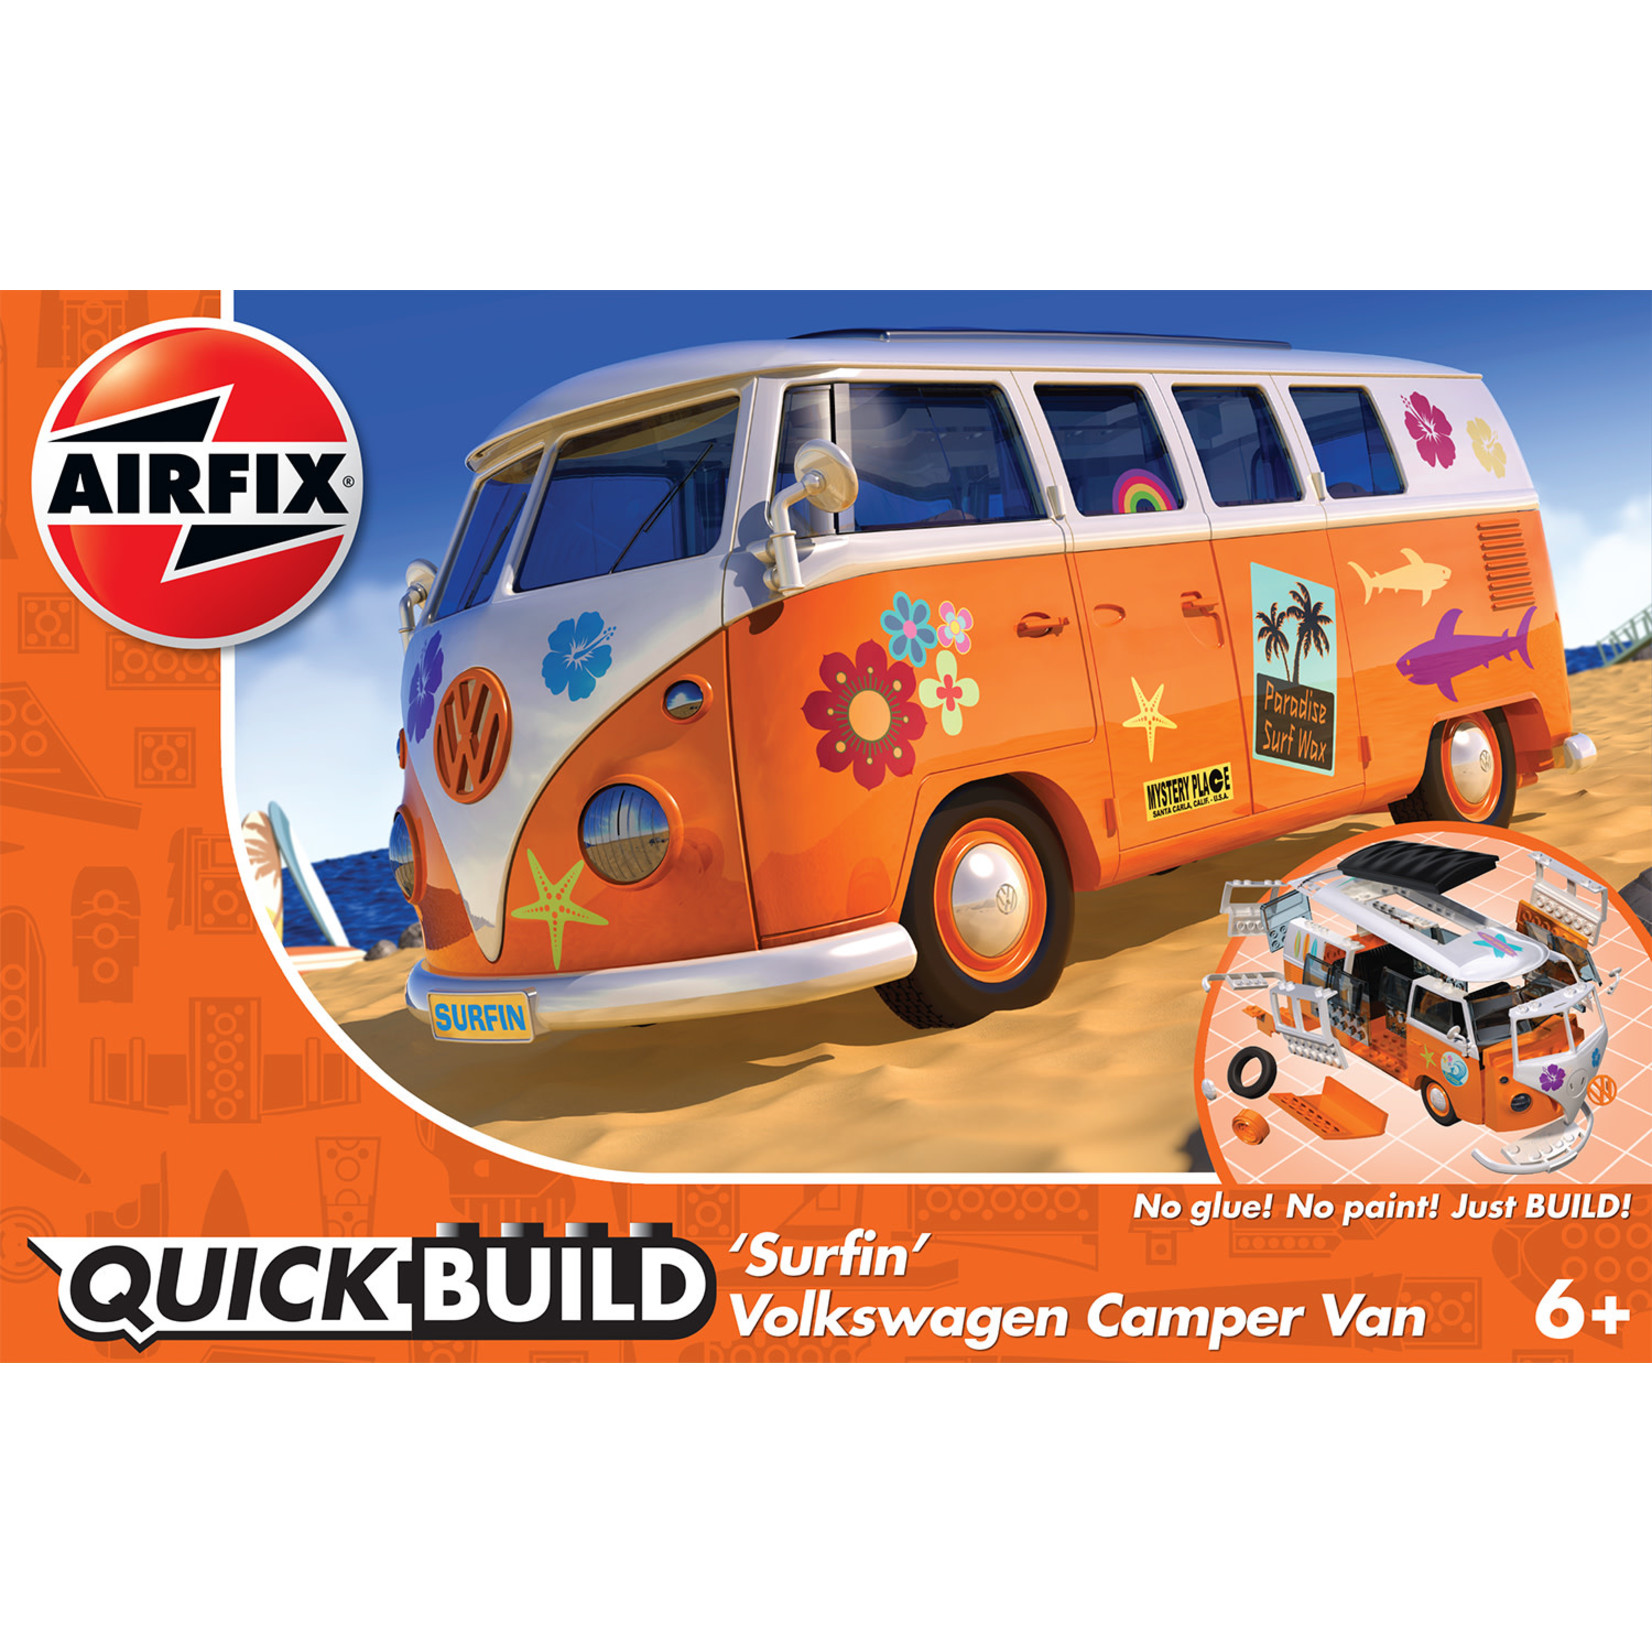 Airfix J6032 Airfix VW Camper Surfin Quickbuild